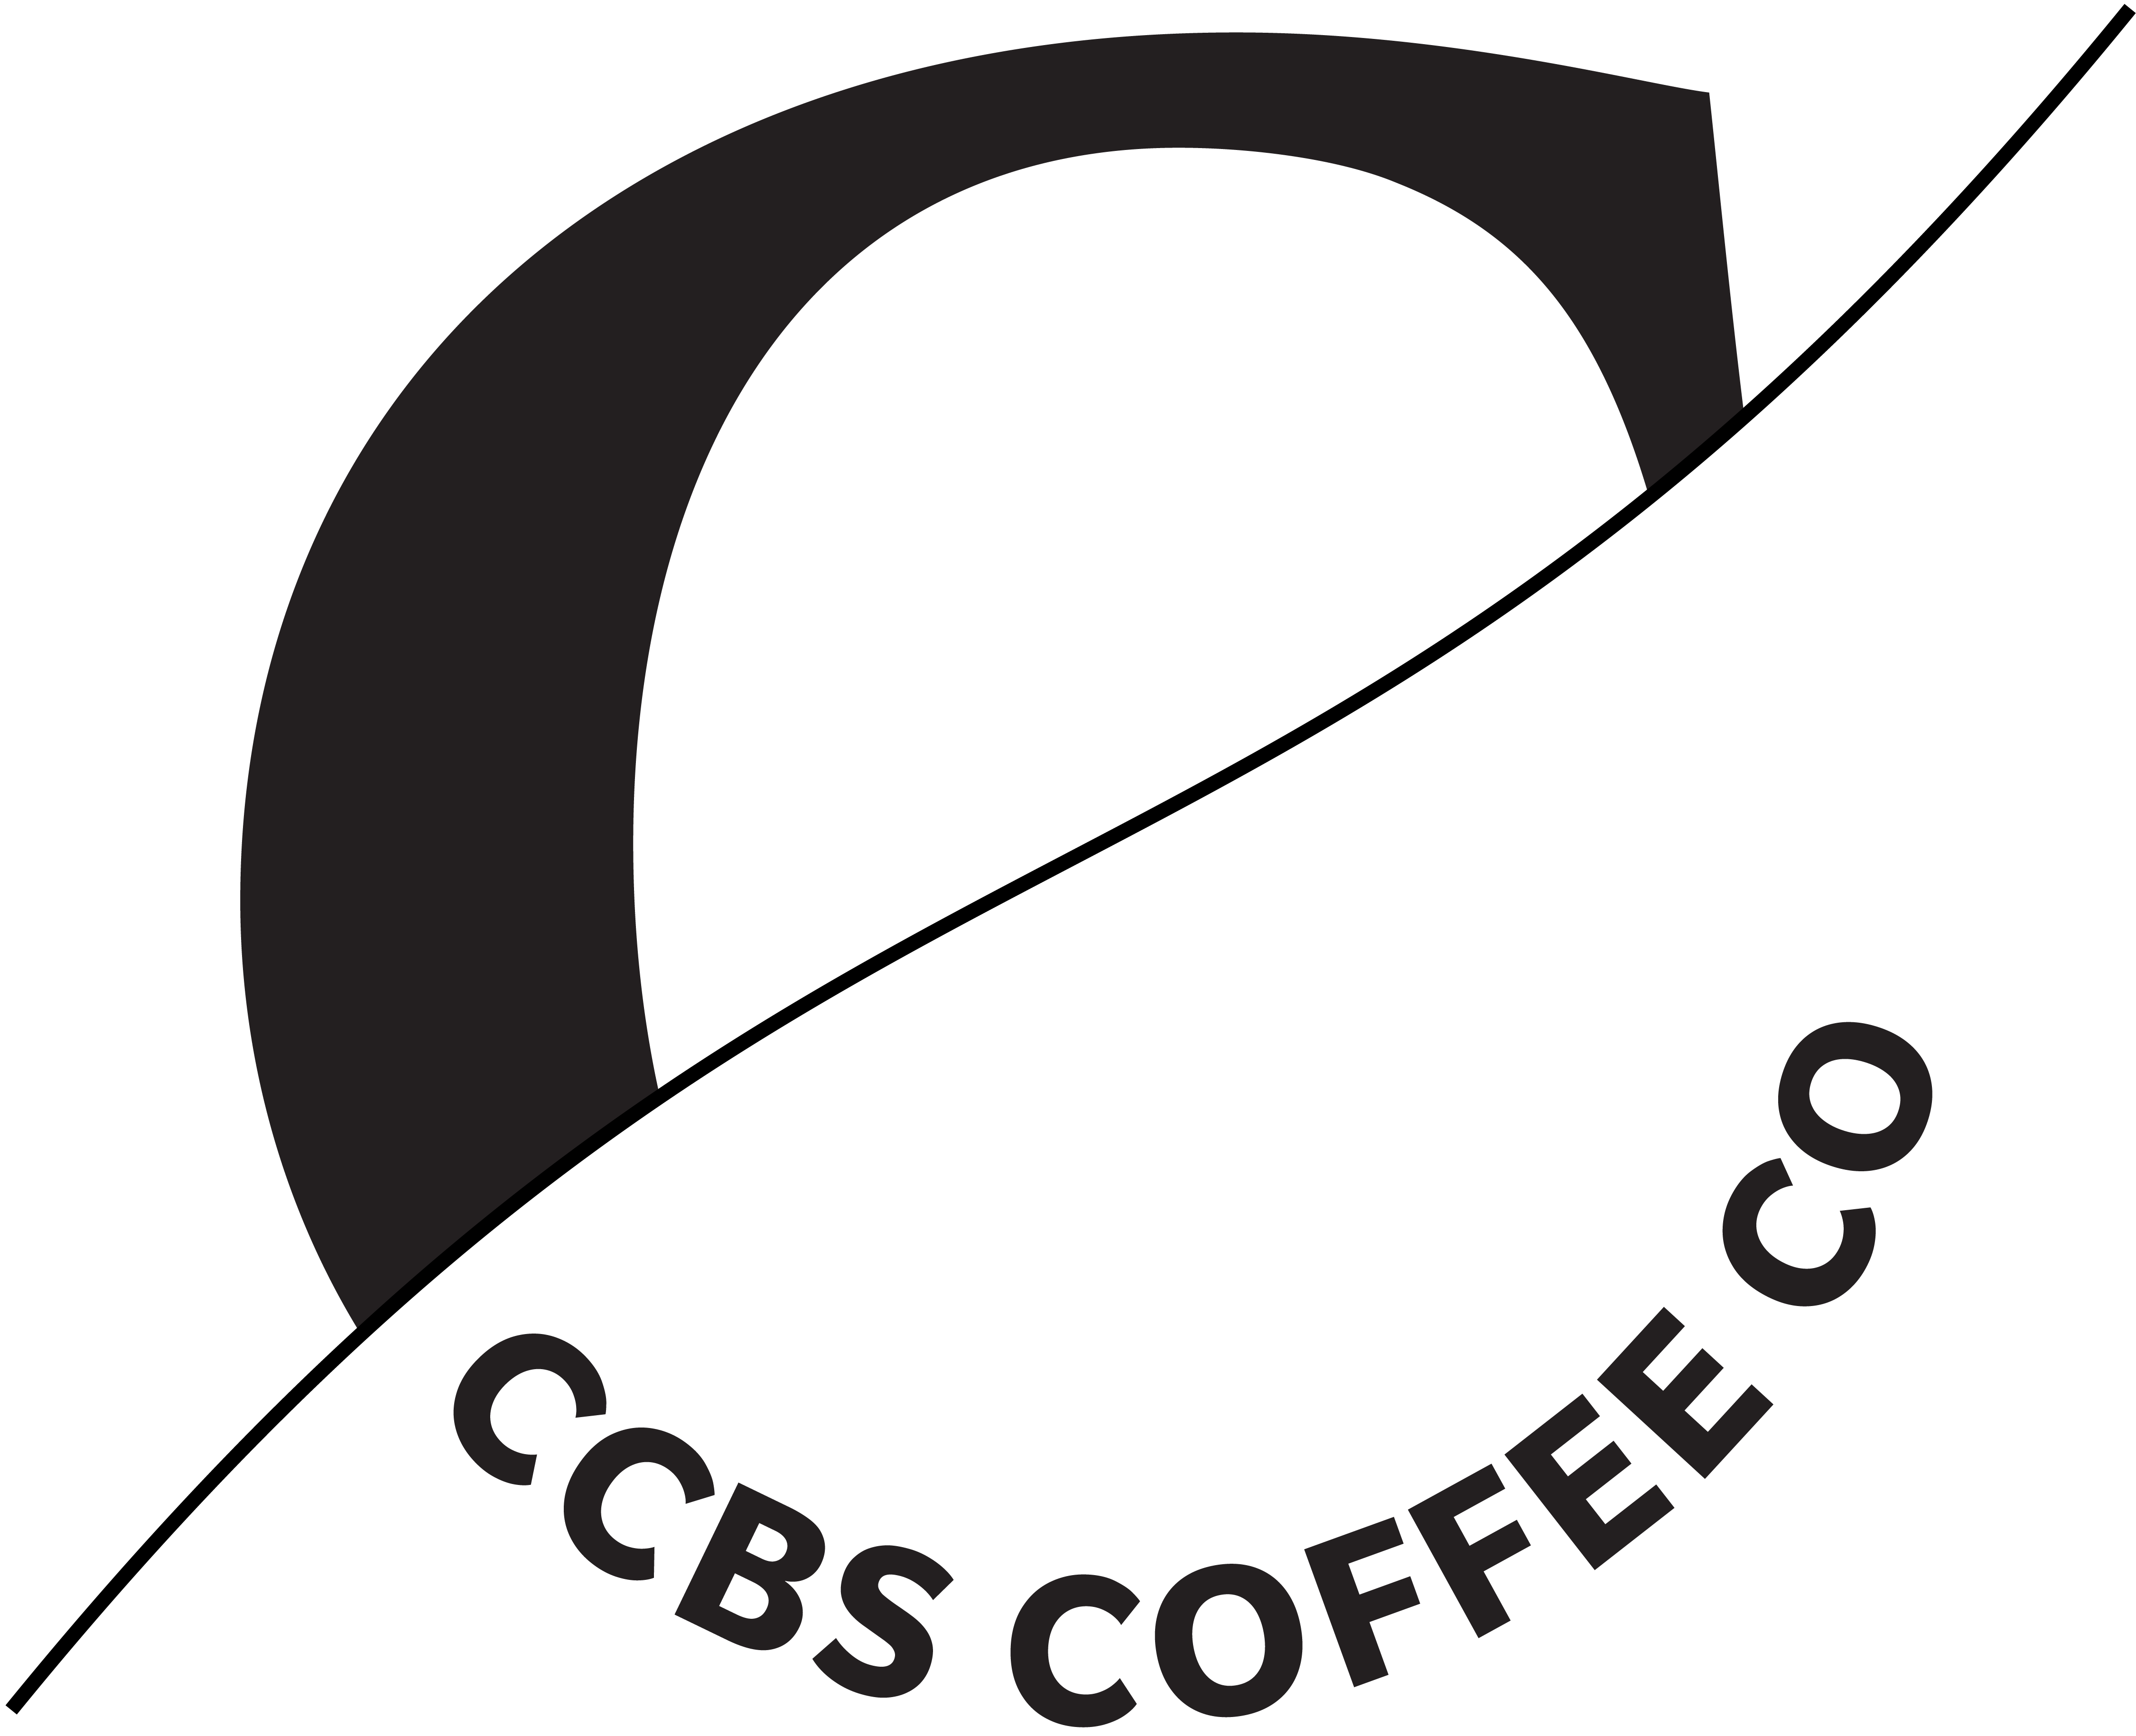 CCBS Coffee Co.